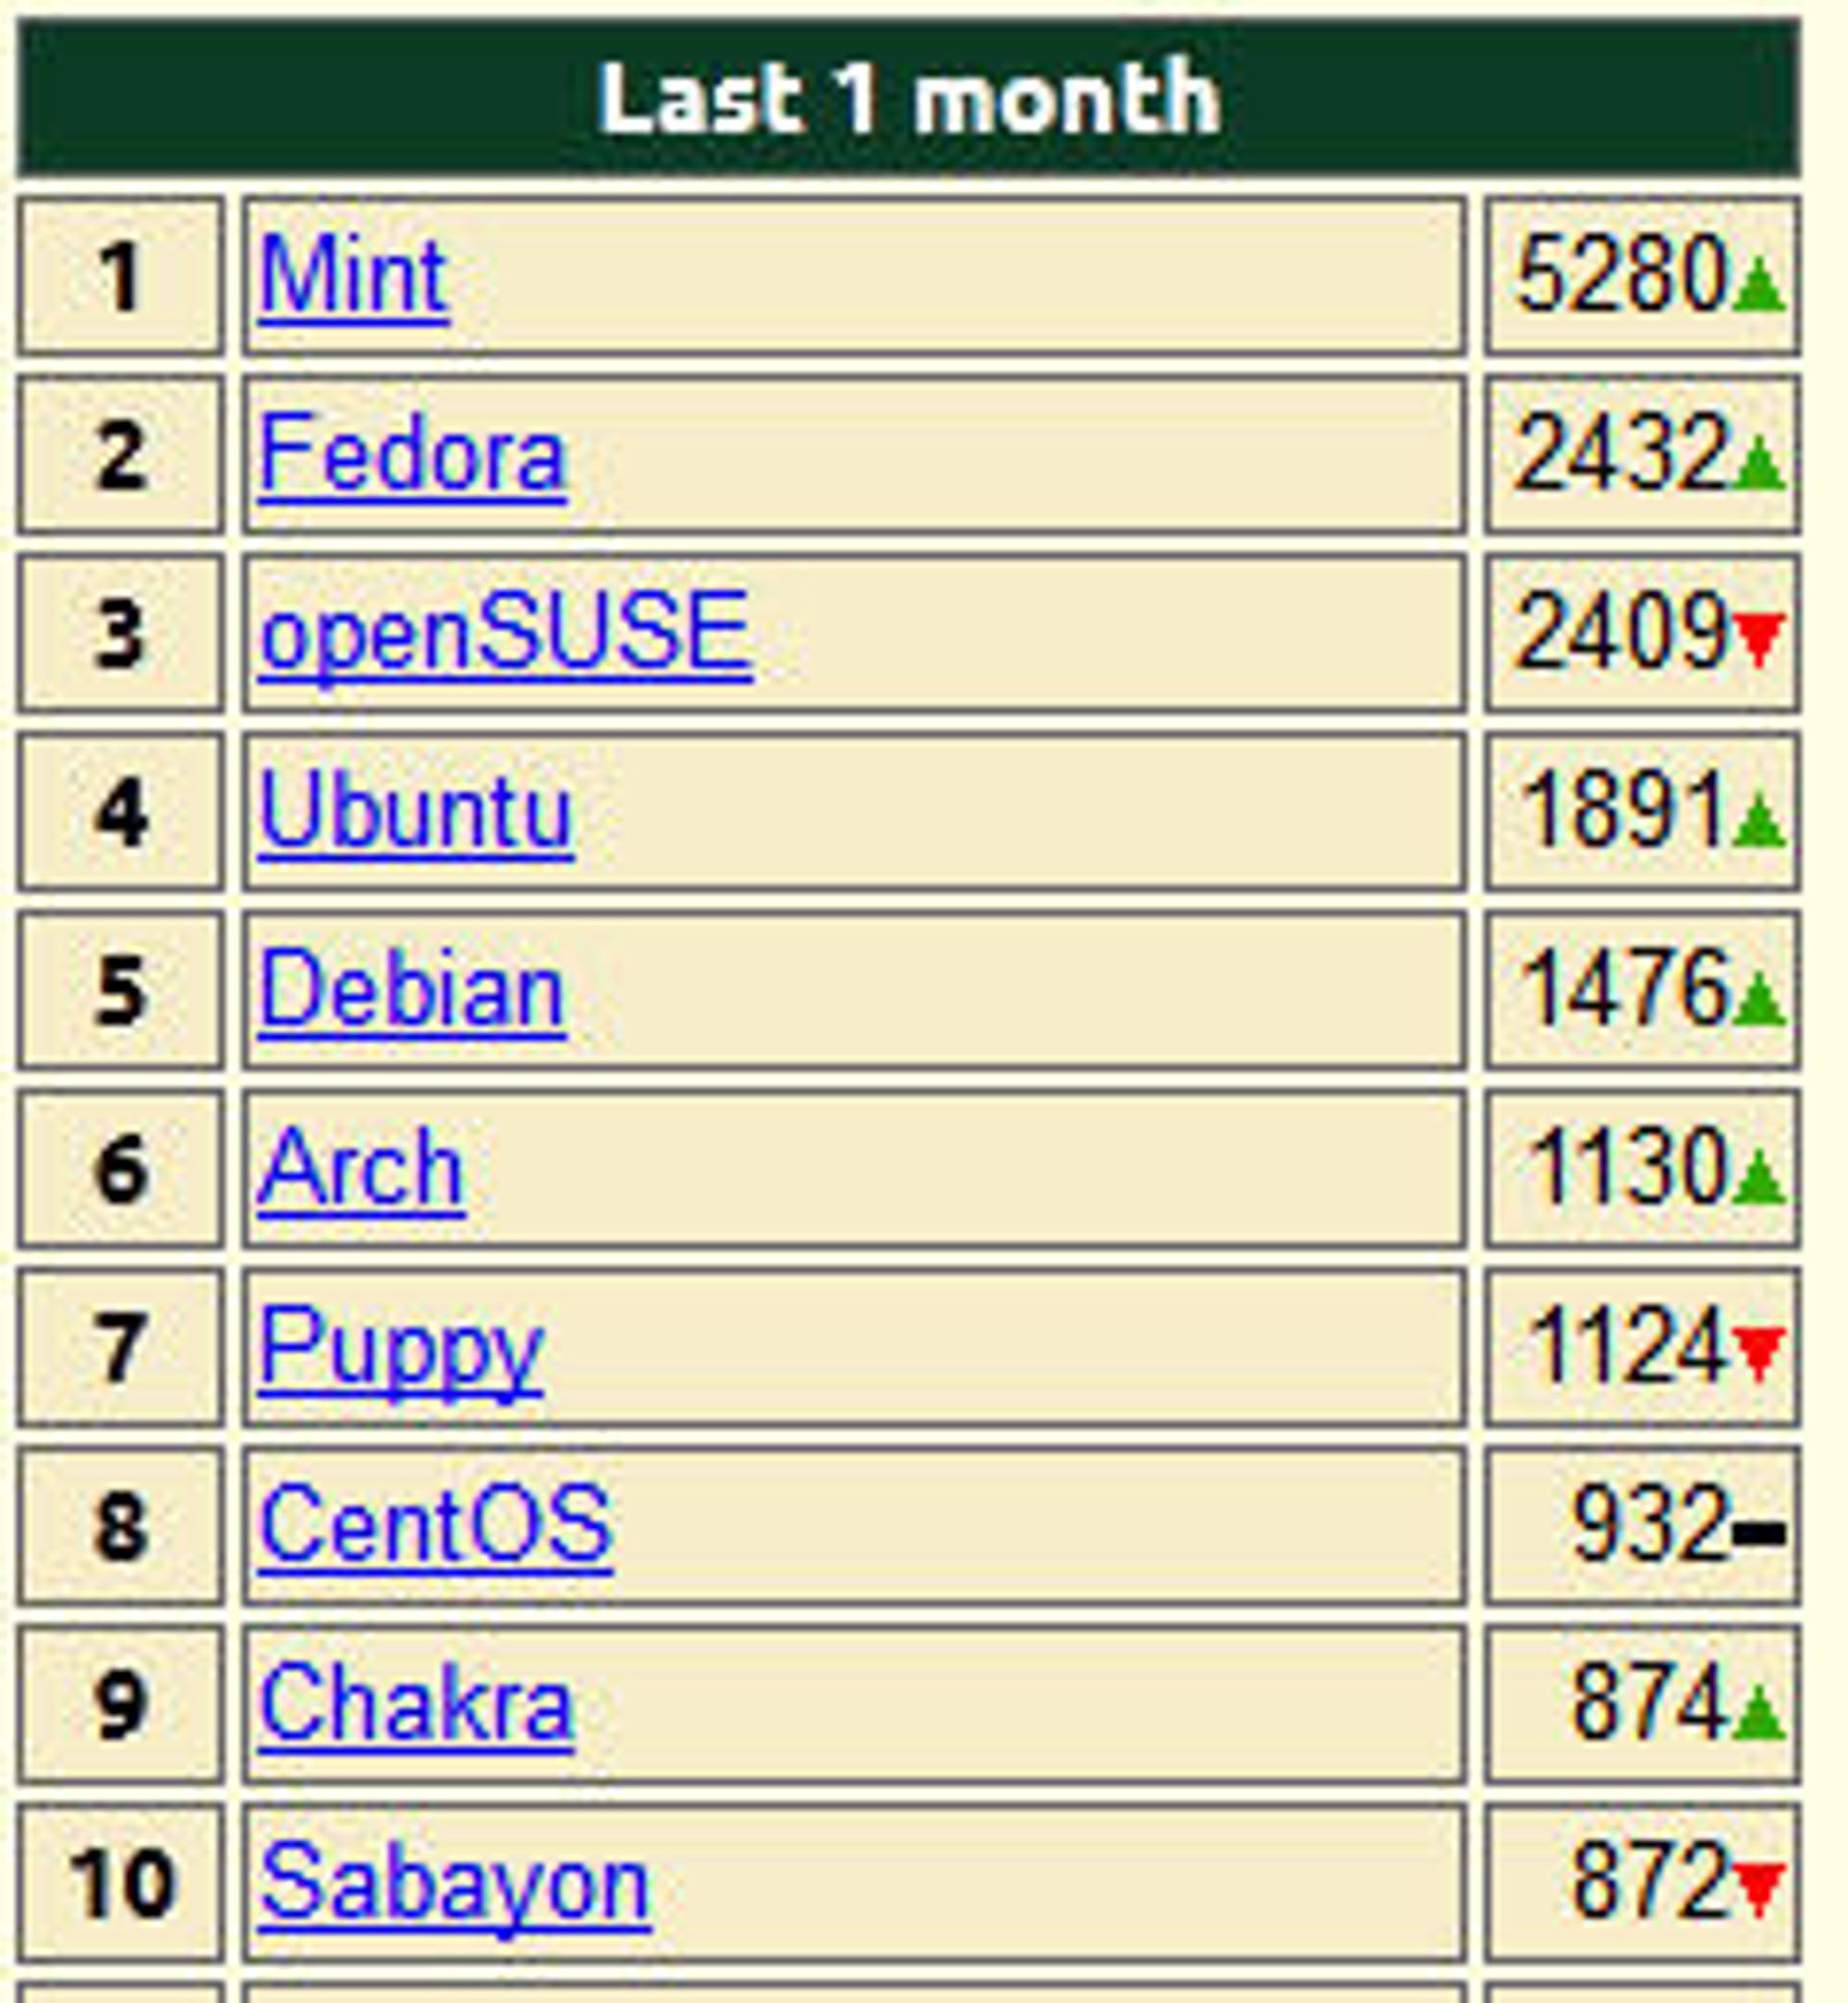 Topp 10 Linux-distribusjoner hos DistroWatch i november 2011.